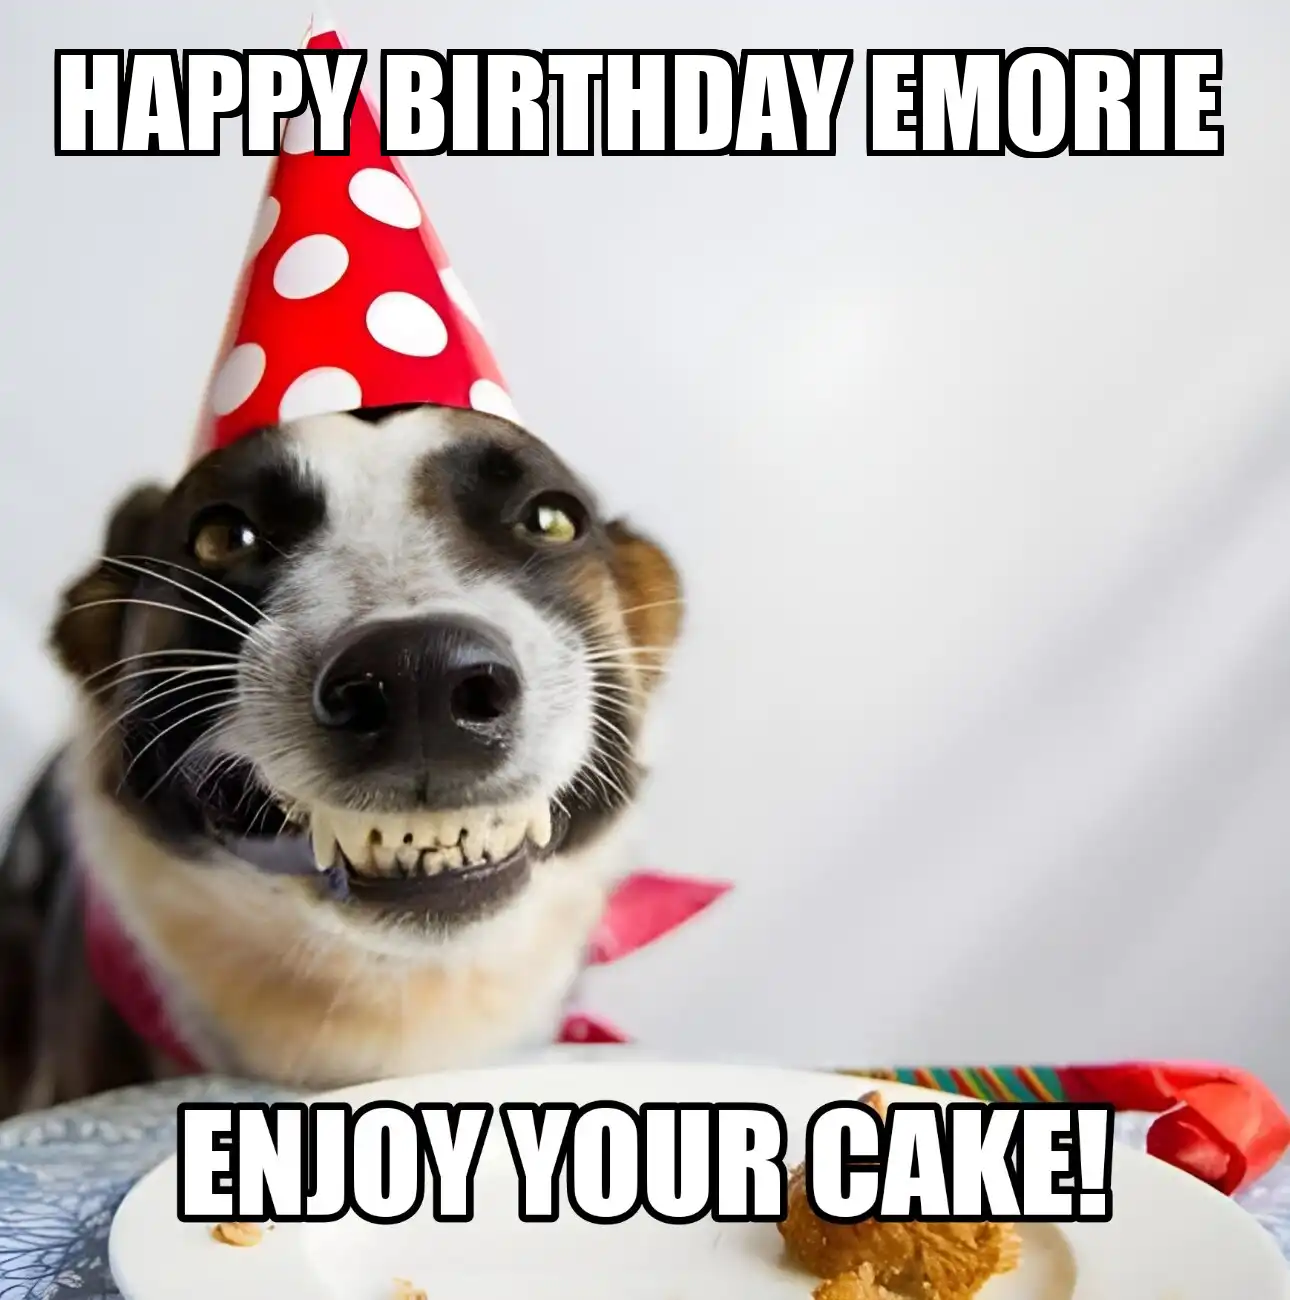 Happy Birthday Emorie Enjoy Your Cake Dog Meme